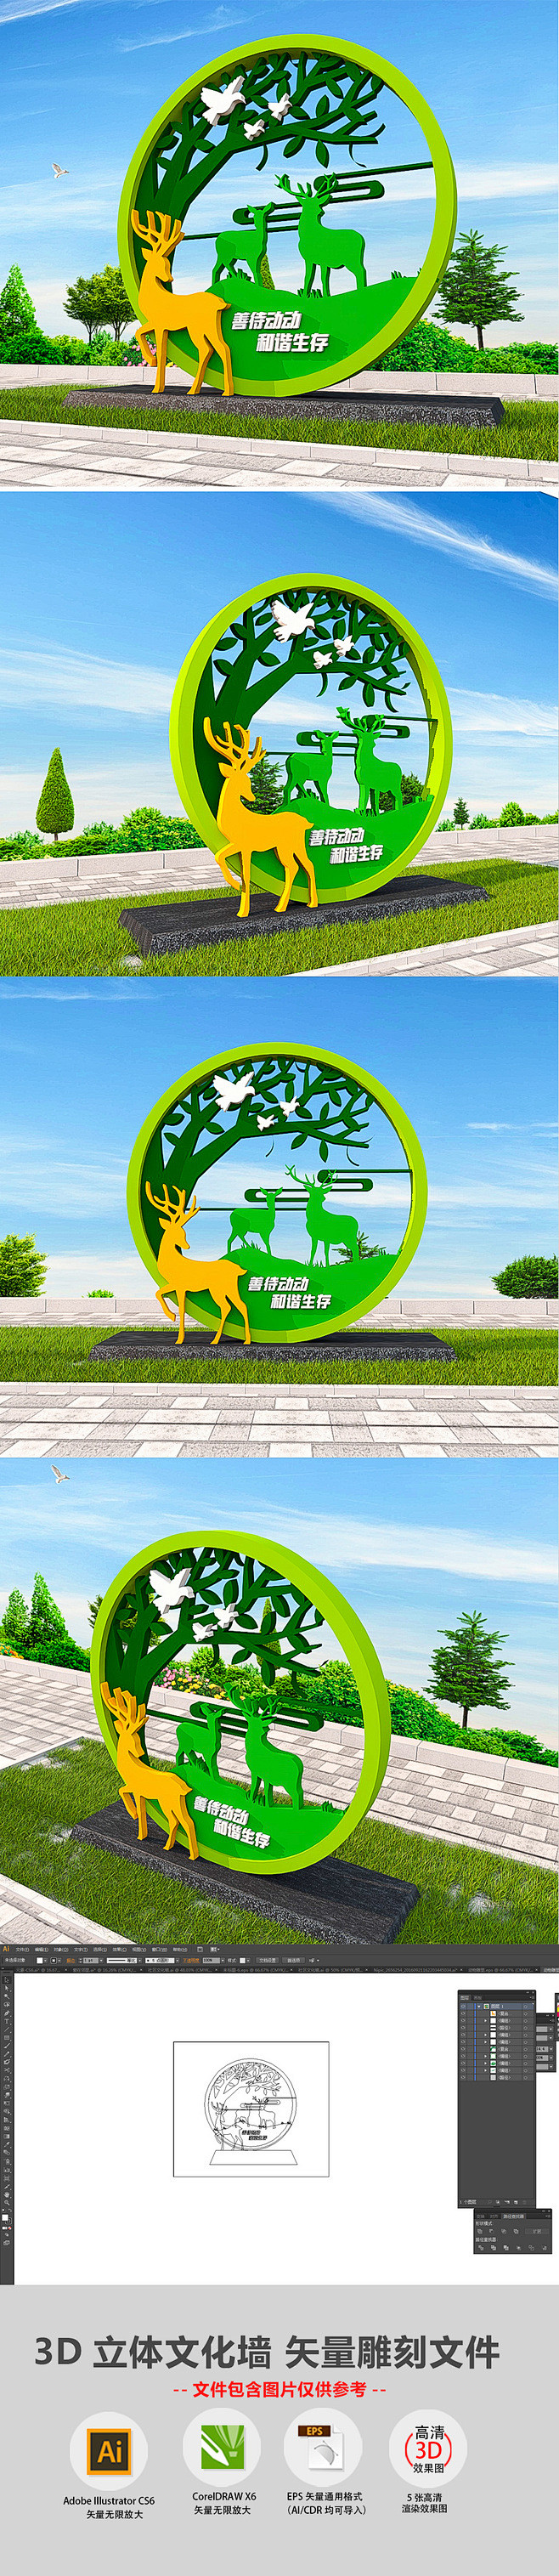 3D绿色环保动物雕塑公园雕塑小品广场户外...